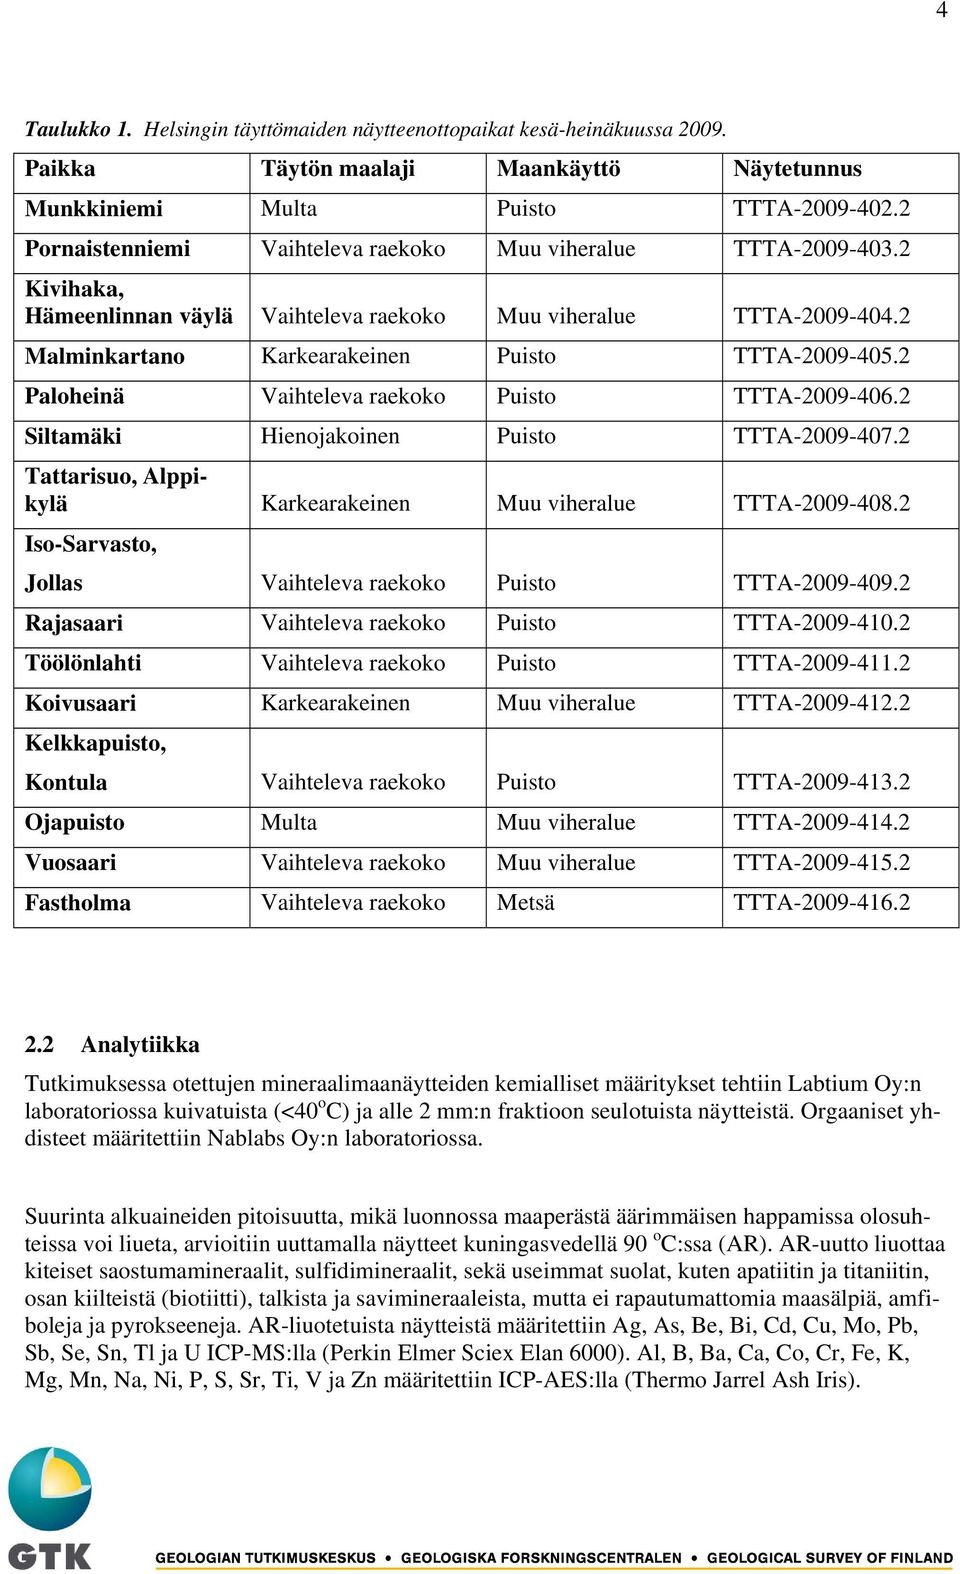 2 Paloheinä Vaihteleva raekoko Puisto TTTA-2009-406.2 Siltamäki Hienojakoinen Puisto TTTA-2009-407.2 Tattarisuo, Alppikylä Karkearakeinen Muu viheralue TTTA-2009-408.